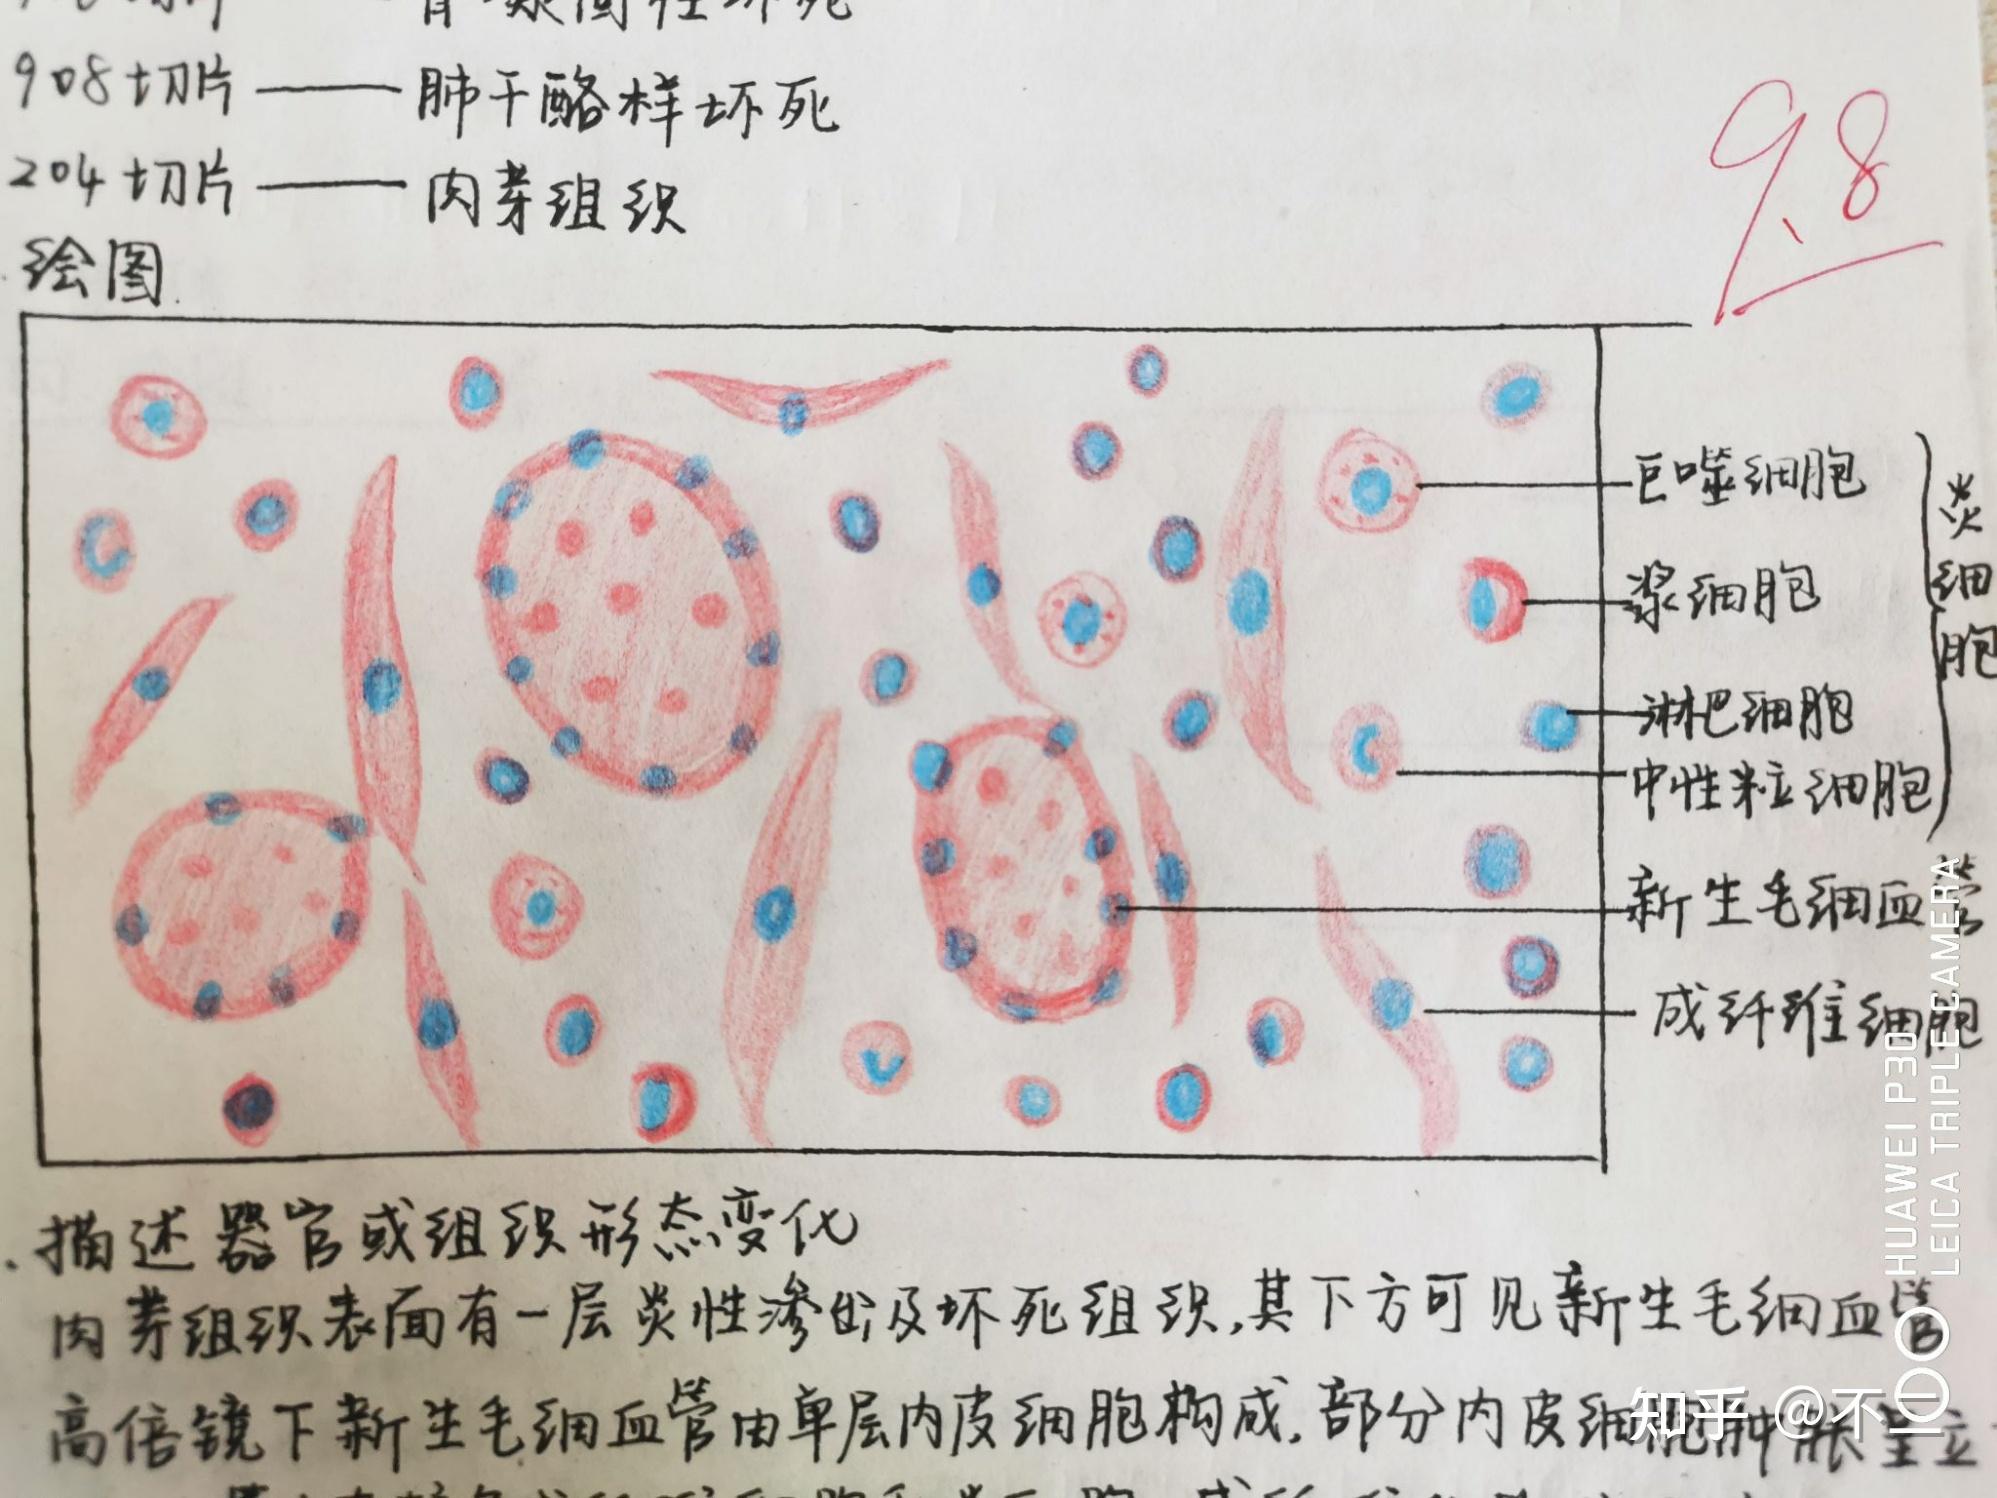 荚膜手绘图红蓝铅笔图片